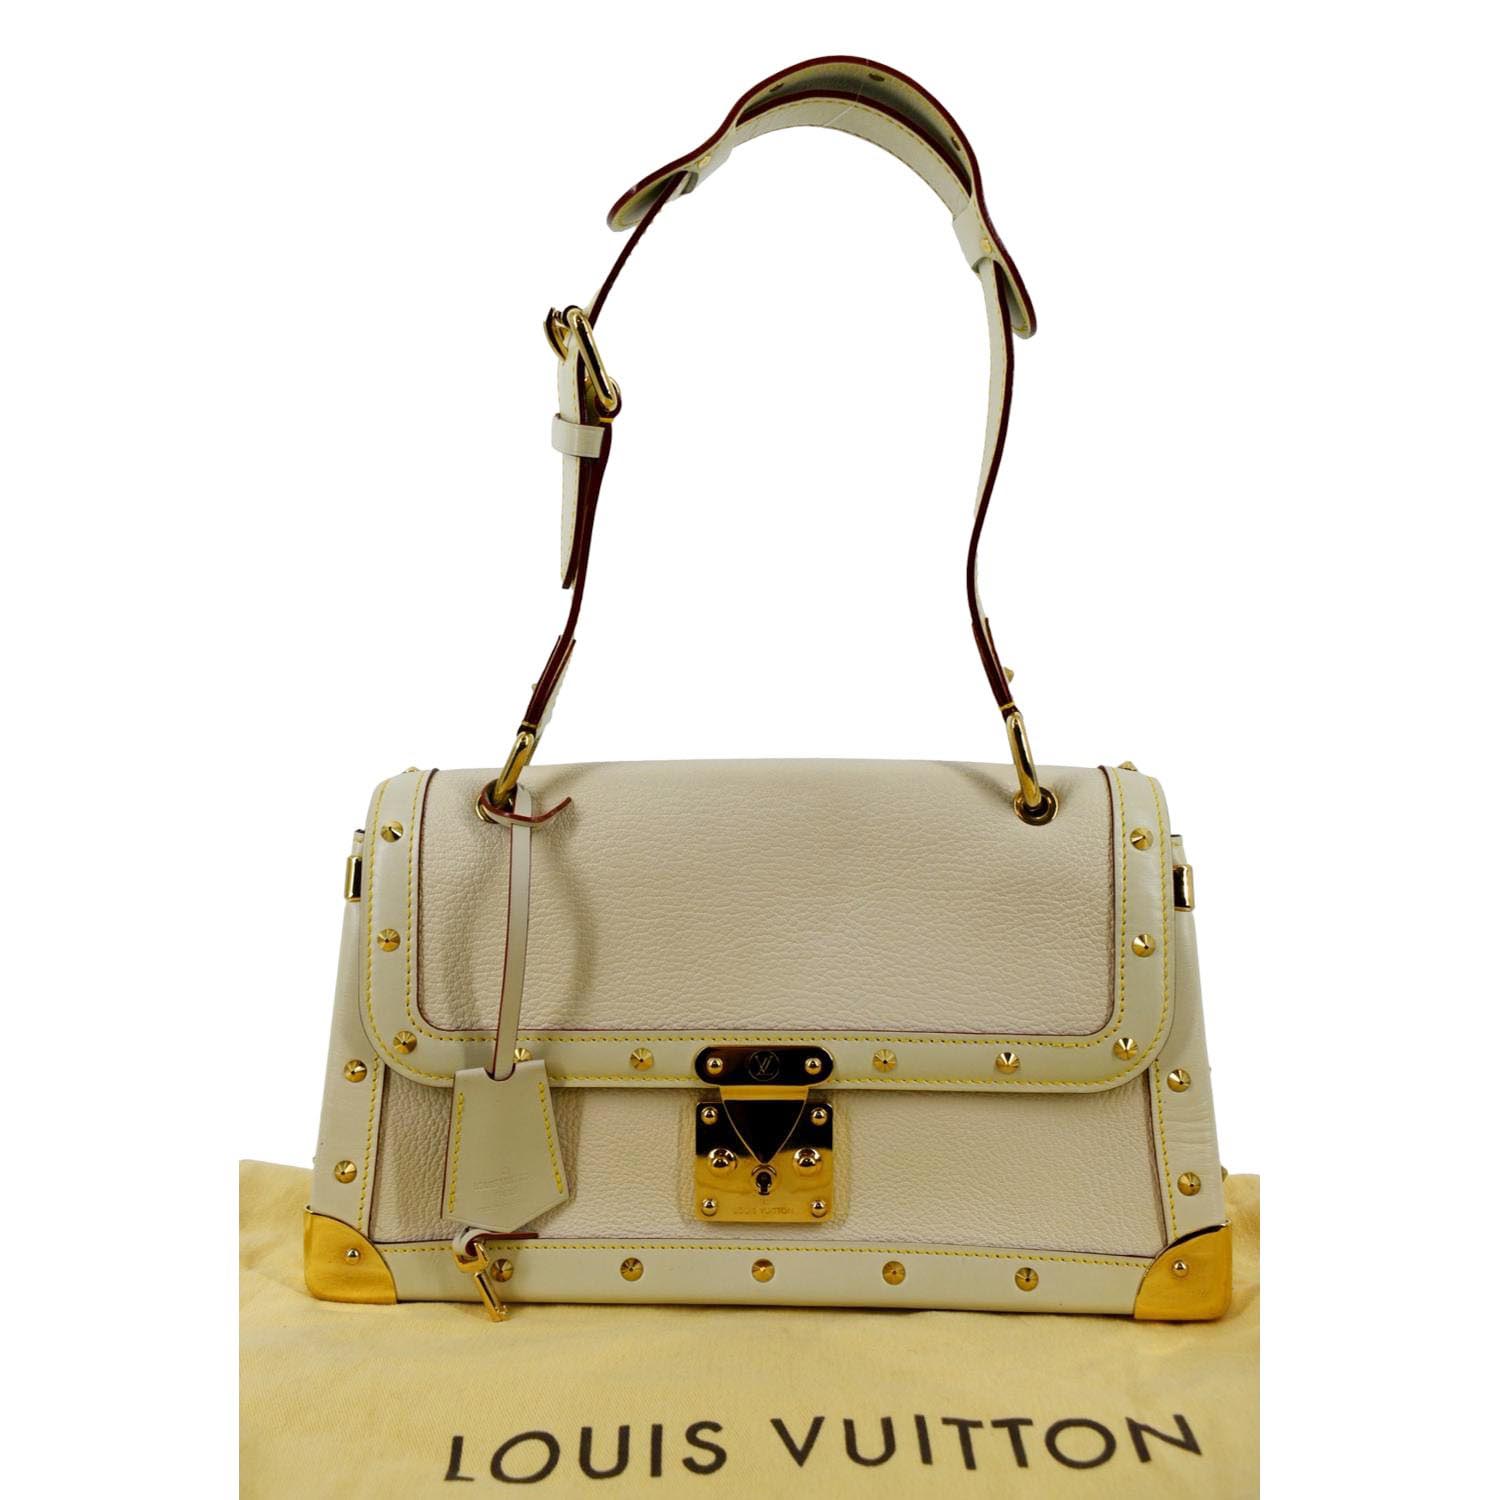 LOUIS VUITTON Suhali Le Talentueux Leather Shoulder Bag White